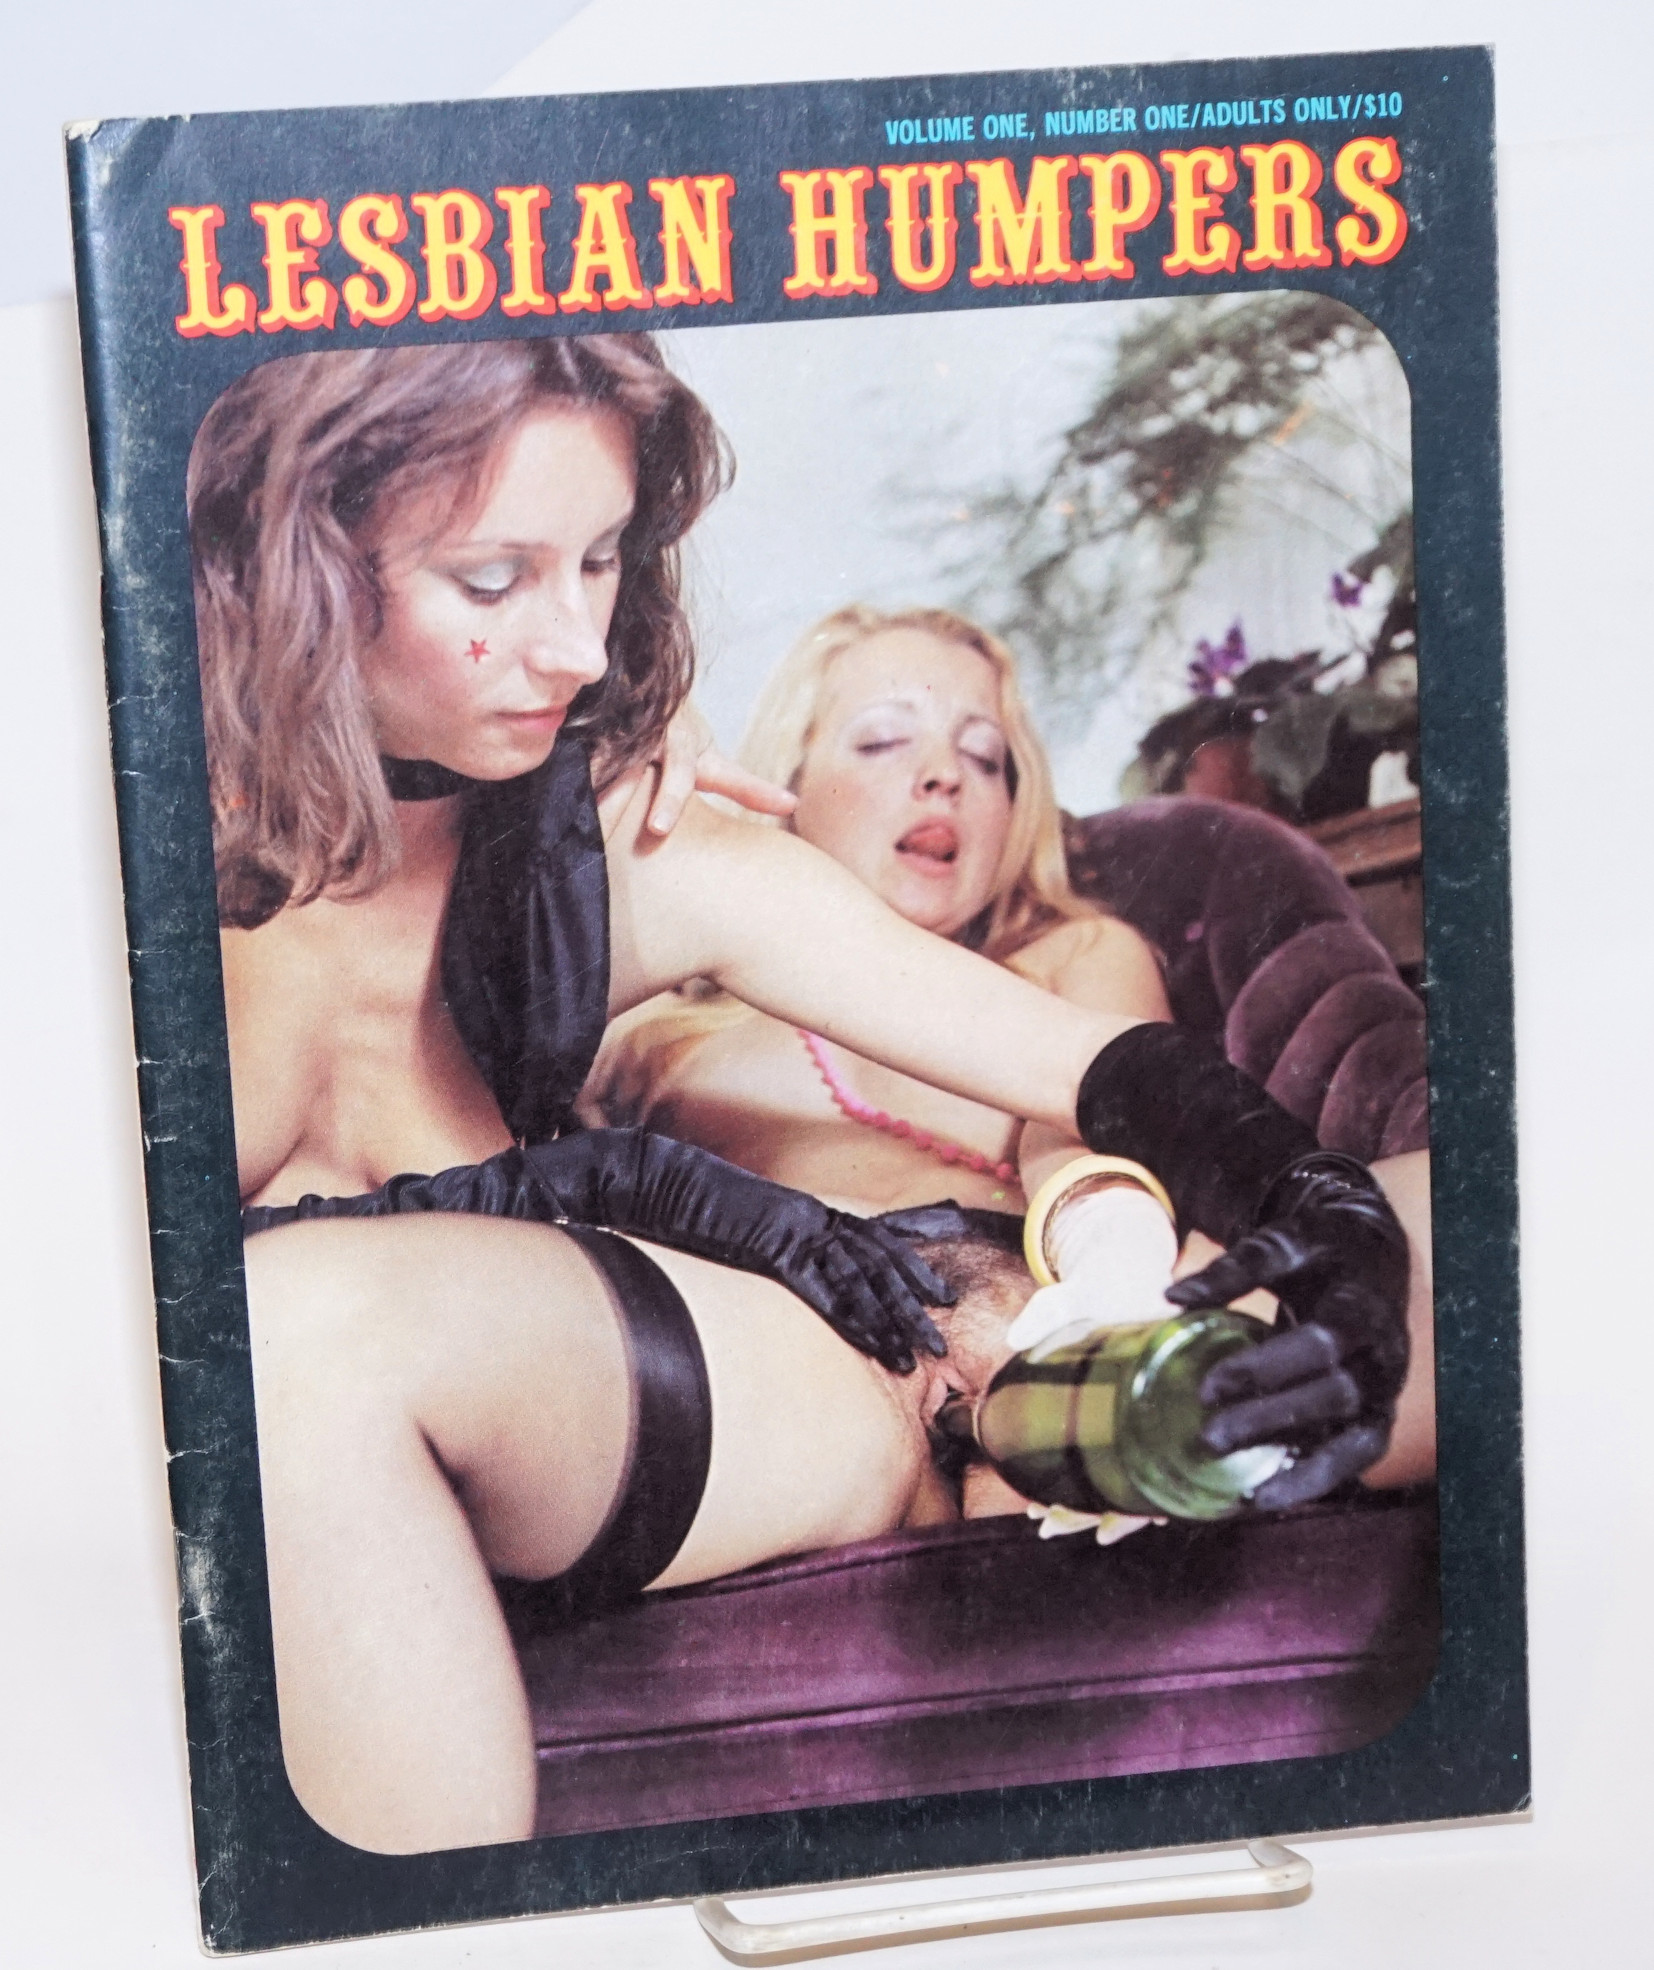 Lesbian humpers